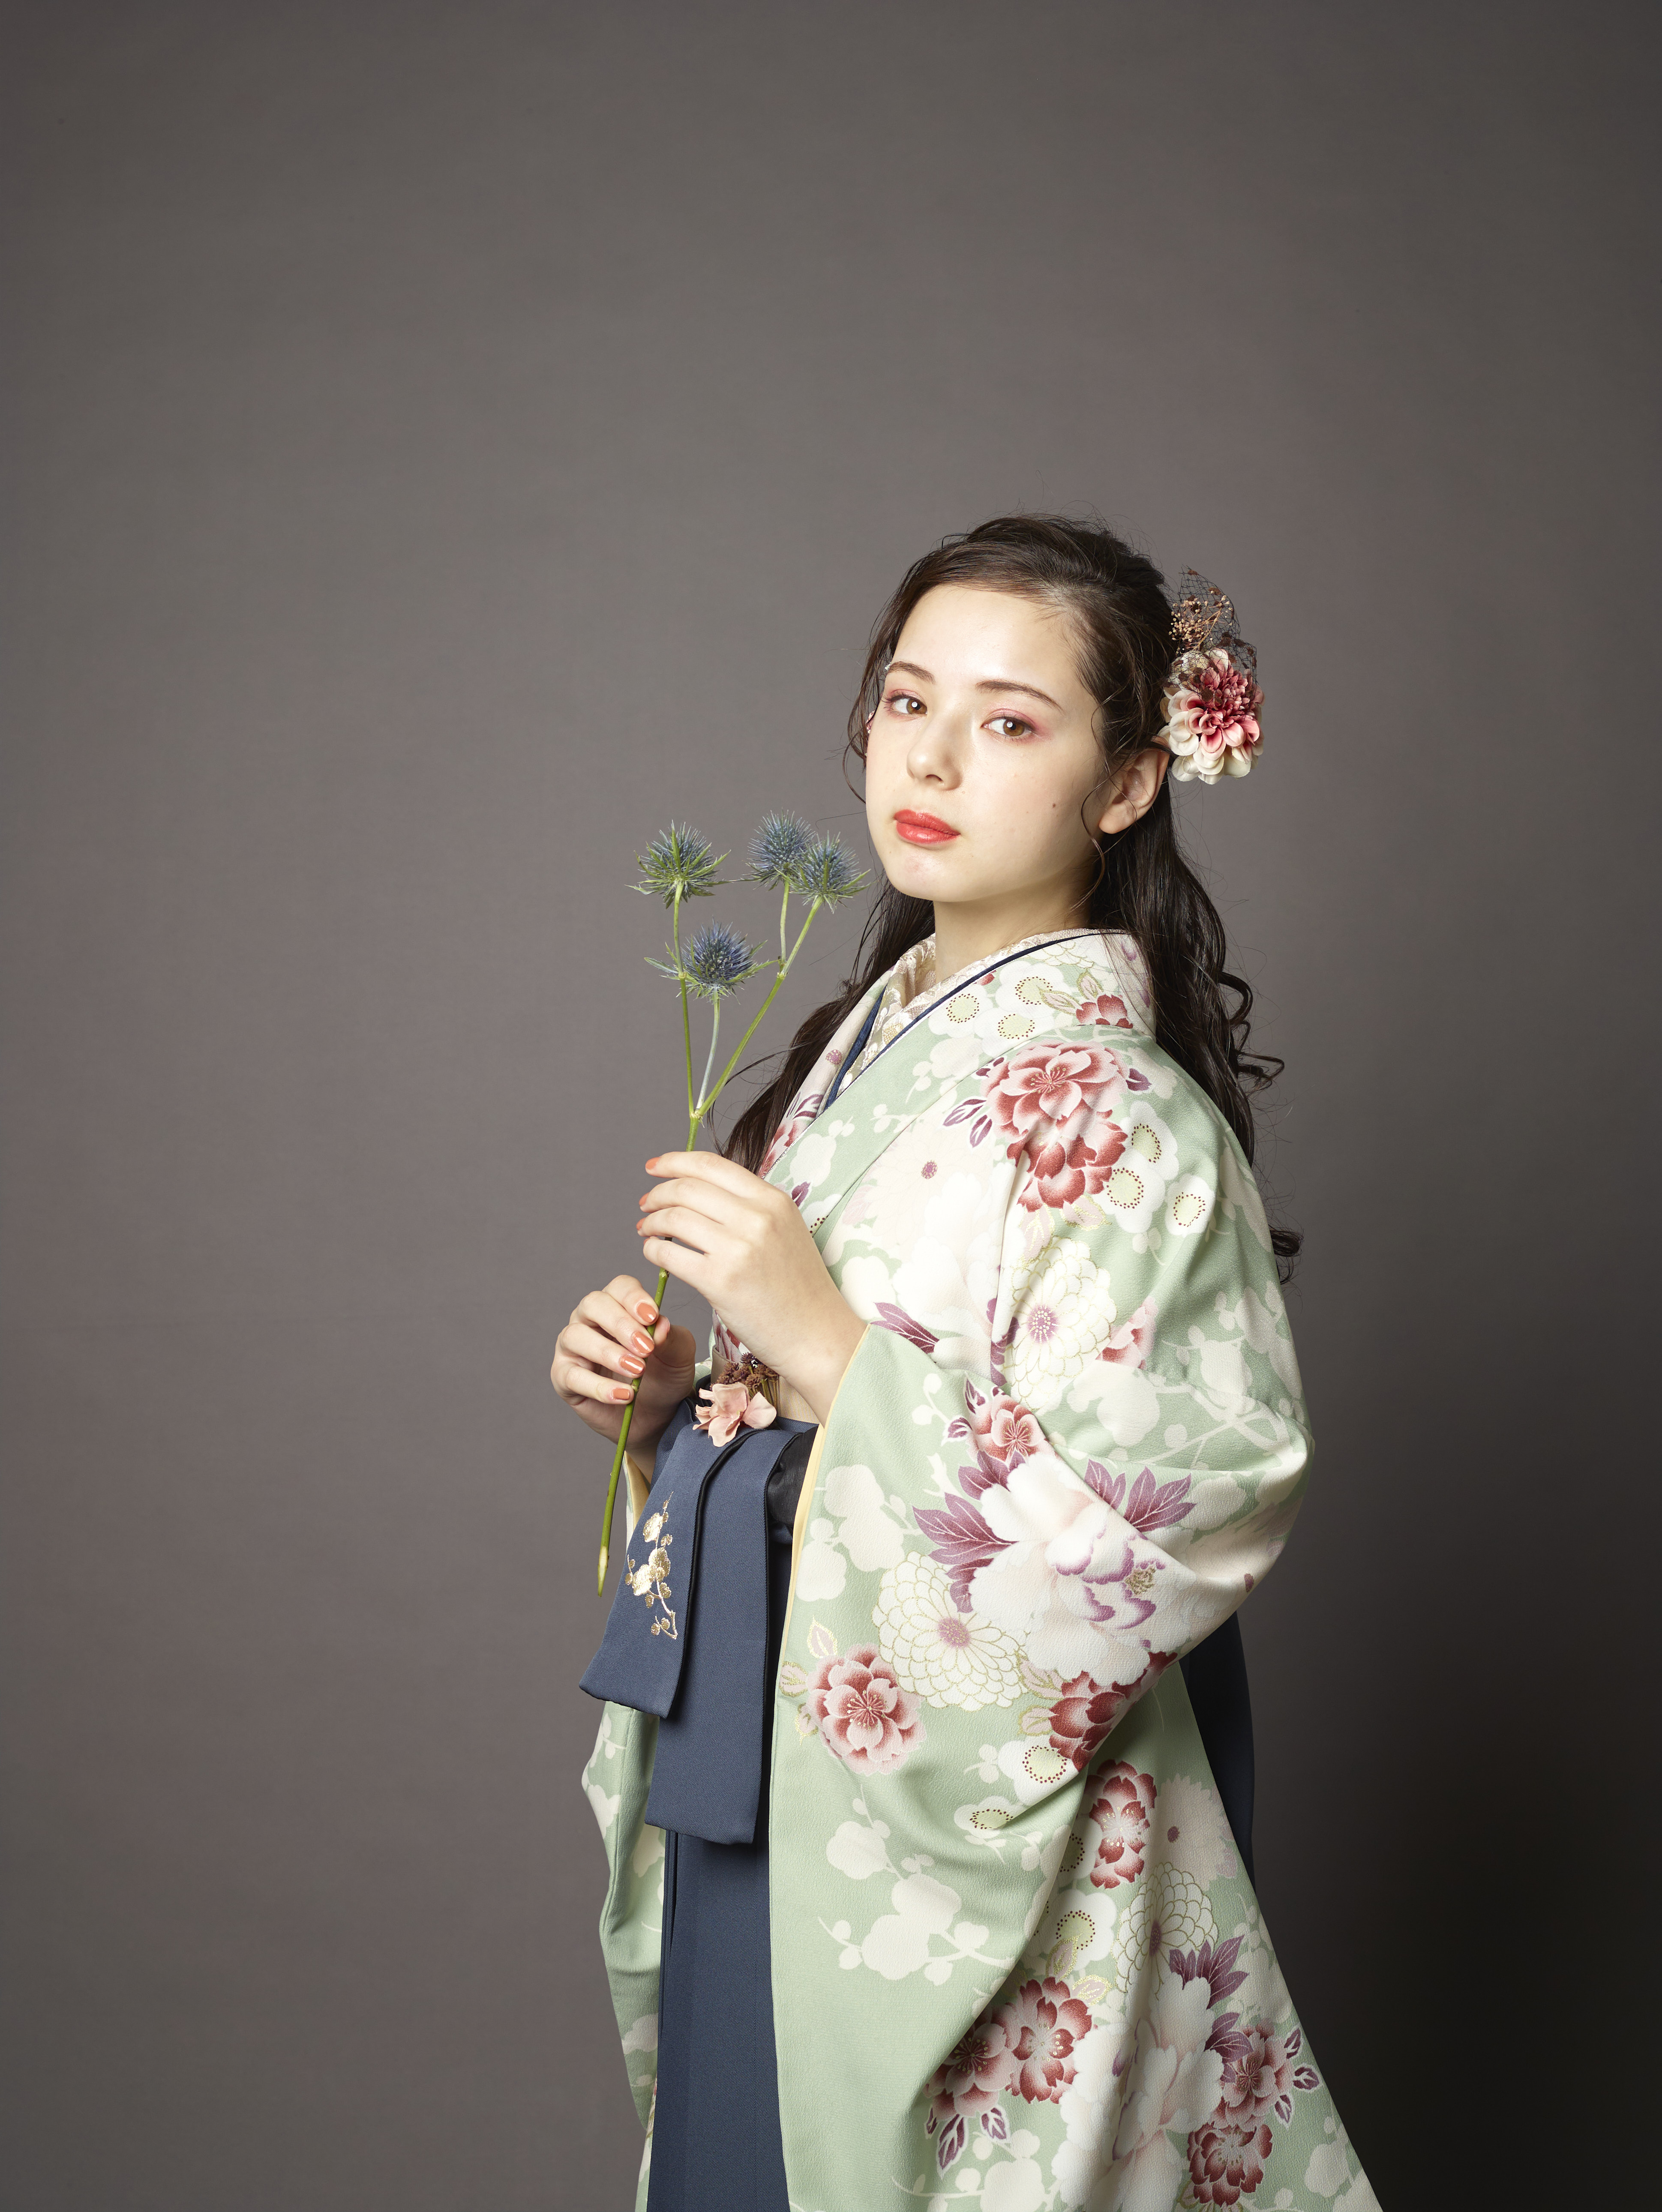 山本寛斎（ヤマモトカンサイ）ブランドの、緑地に白とピンクの花柄の二尺袖と、黒の袴の女性用卒業式袴を着用したアップ写真